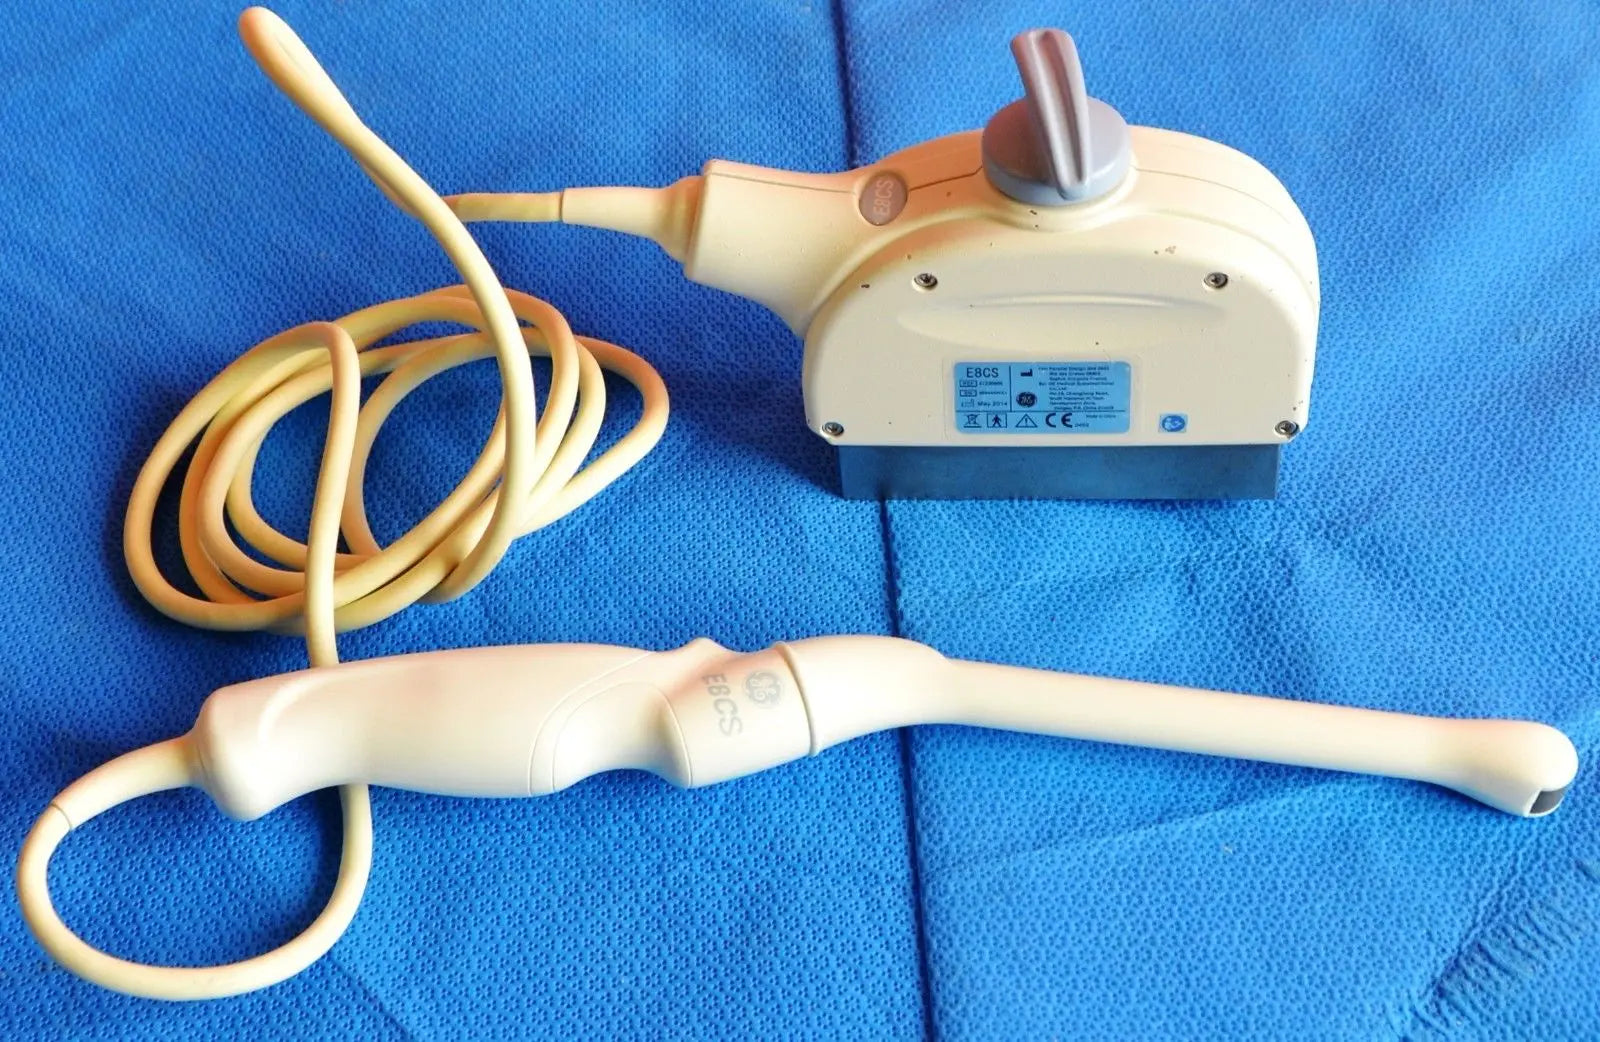 GE E8CS Endocavity Ultrasound Probe Gynecology Ultrasound Transducer 2014